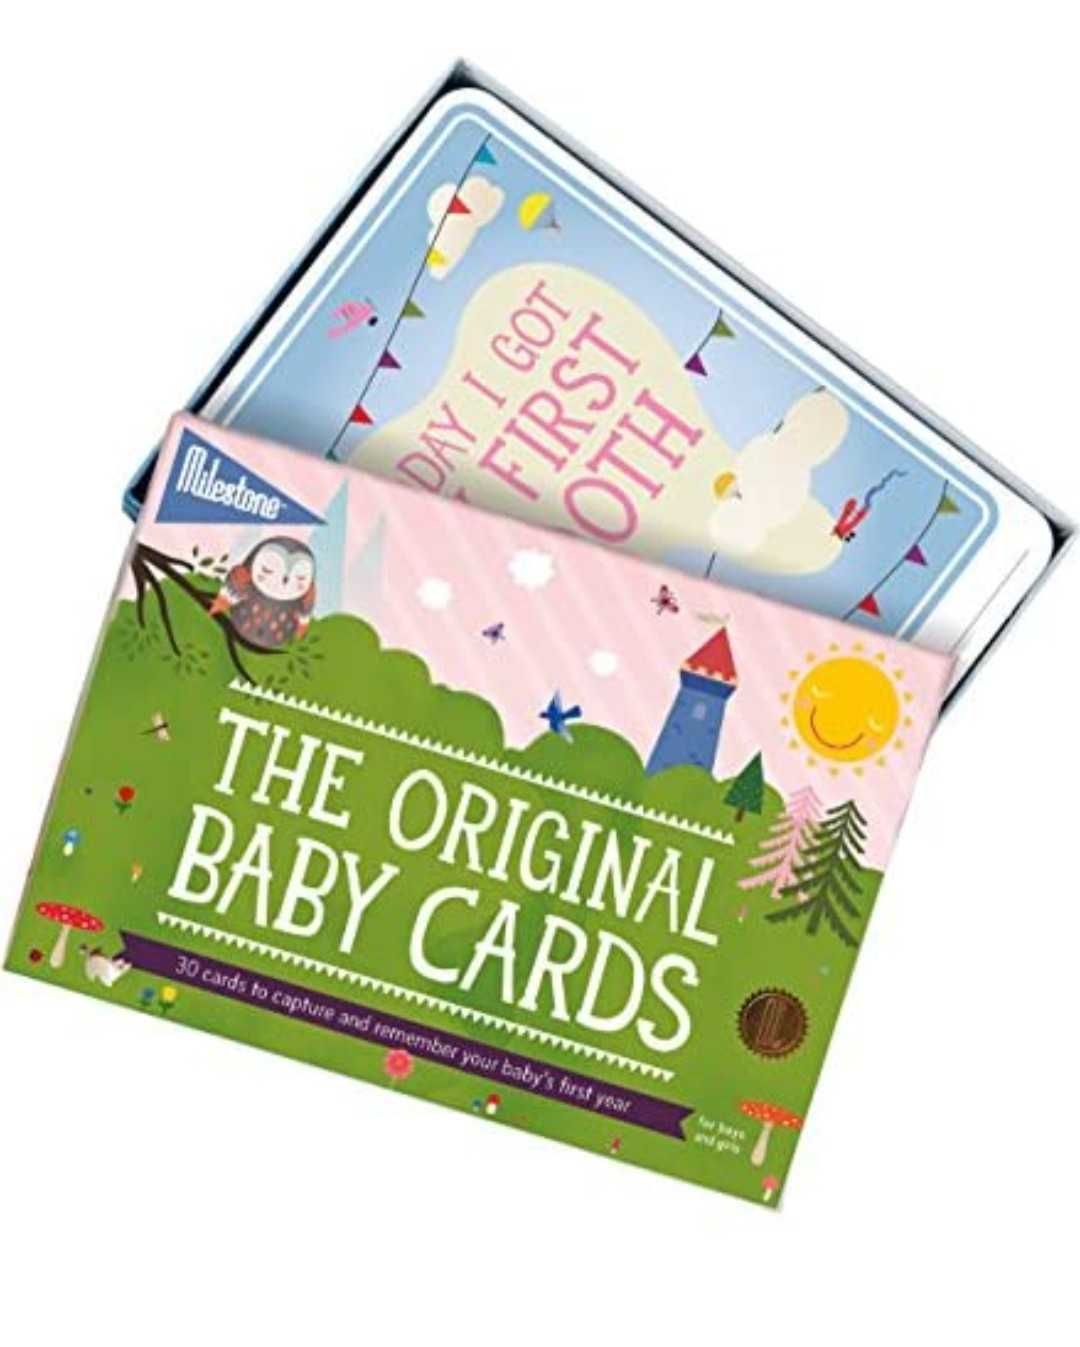 FOTO KARTY DLA MAM Original Baby Cards-First Year Memories KARTY ZDJĘĆ